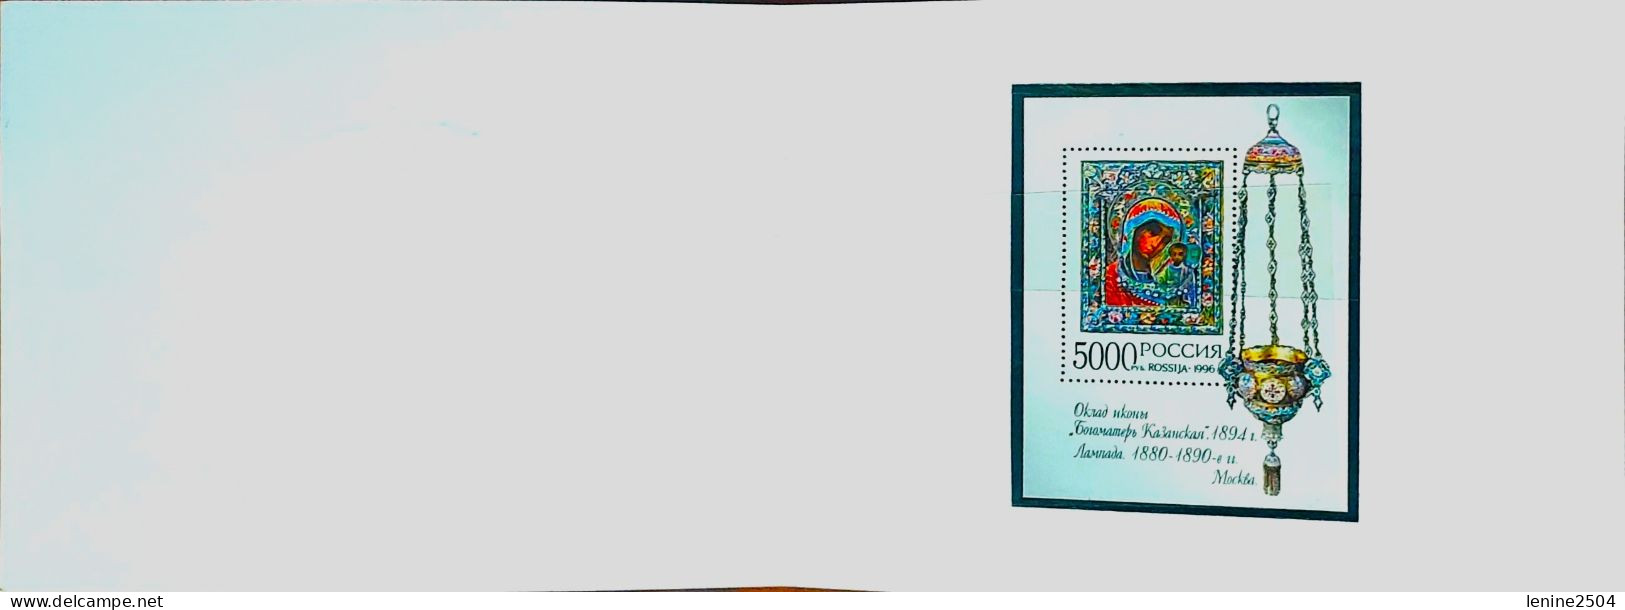 Russie 1996 Yvert Bloc N° 233 ** Emission 1er Jour Carnet Prestige Folder Booklet. - Ongebruikt